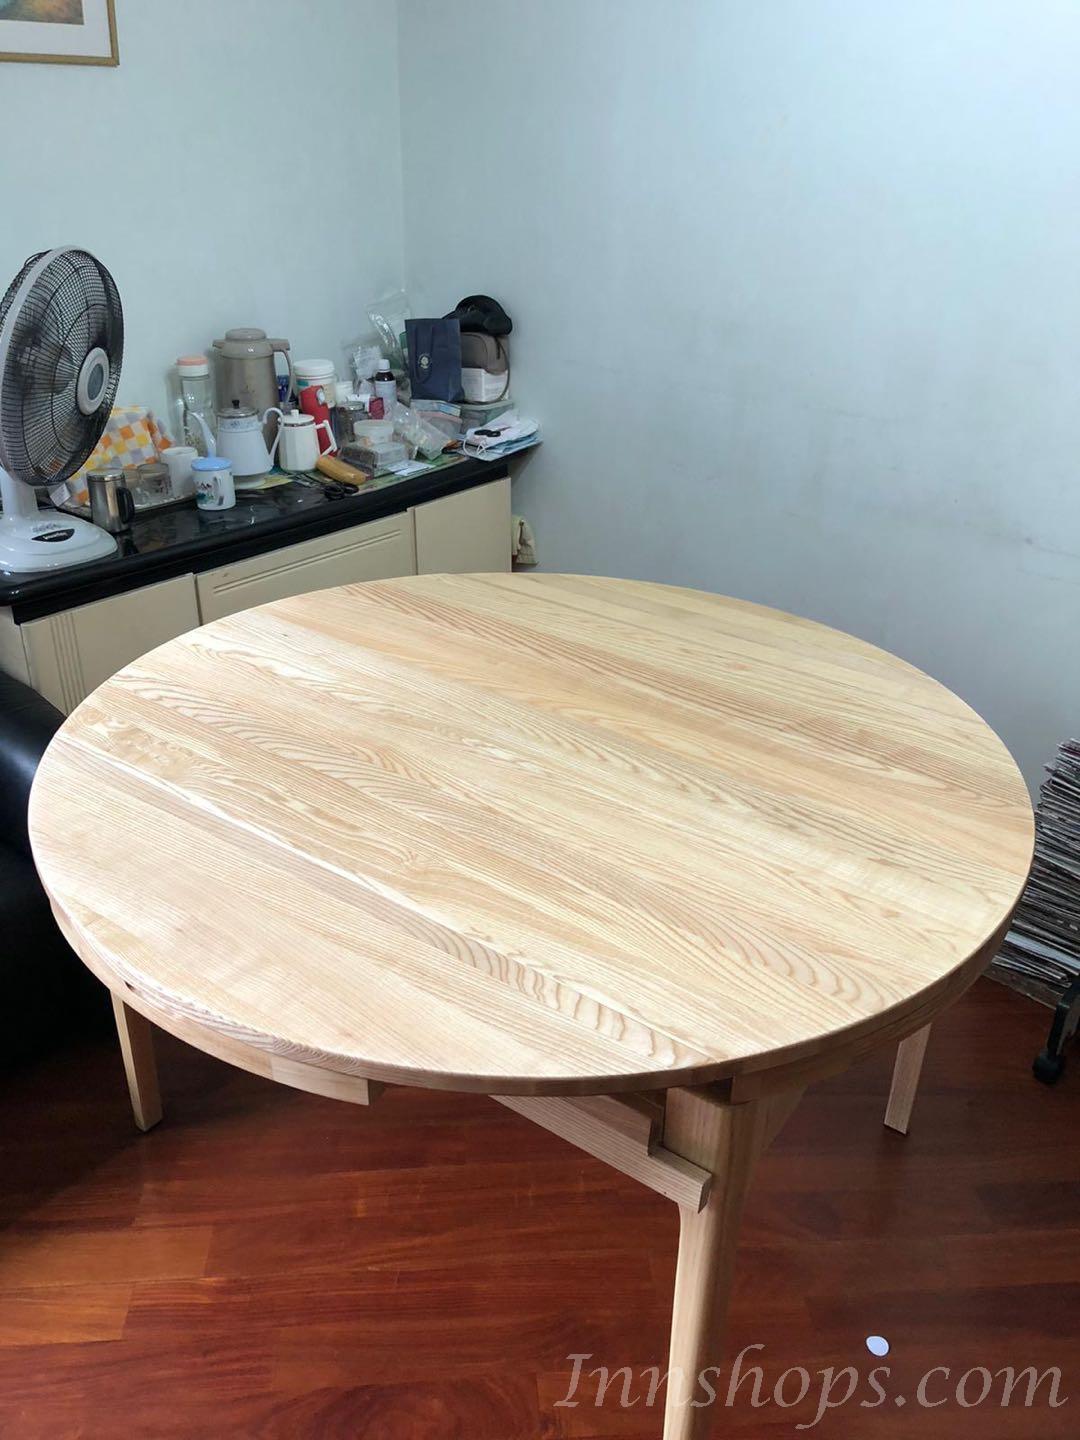 北歐實木系列 白蠟木伸縮餐桌椅子 (135cm)(IS6496)